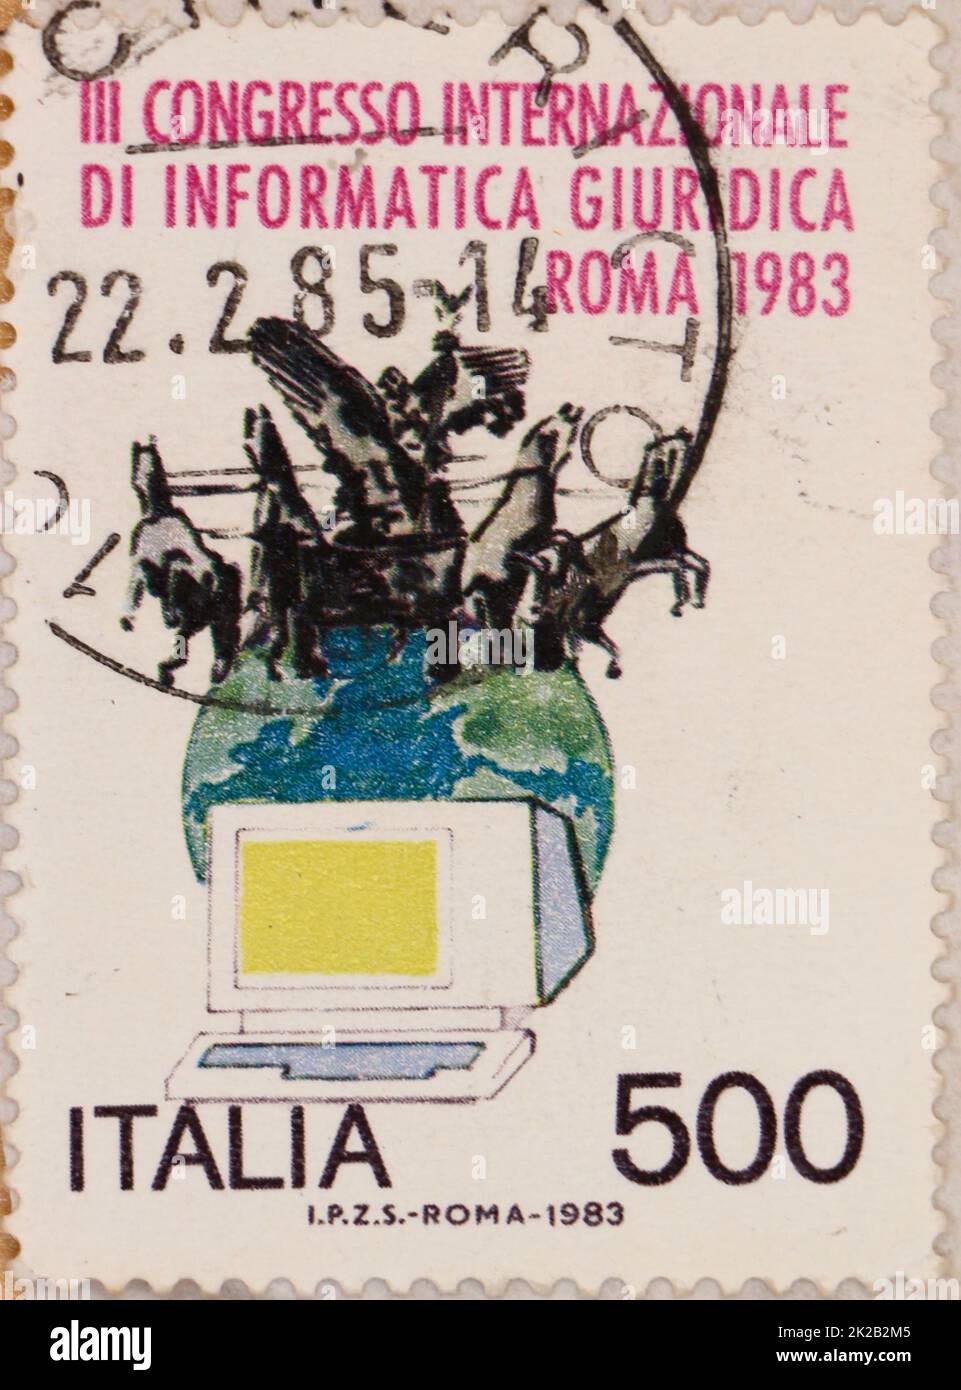 Foto di un francobollo italiano con un'illustrazione di un computer la terra e una statua di un carro del Palazzo di Giustizia di Roma 1983 Foto Stock